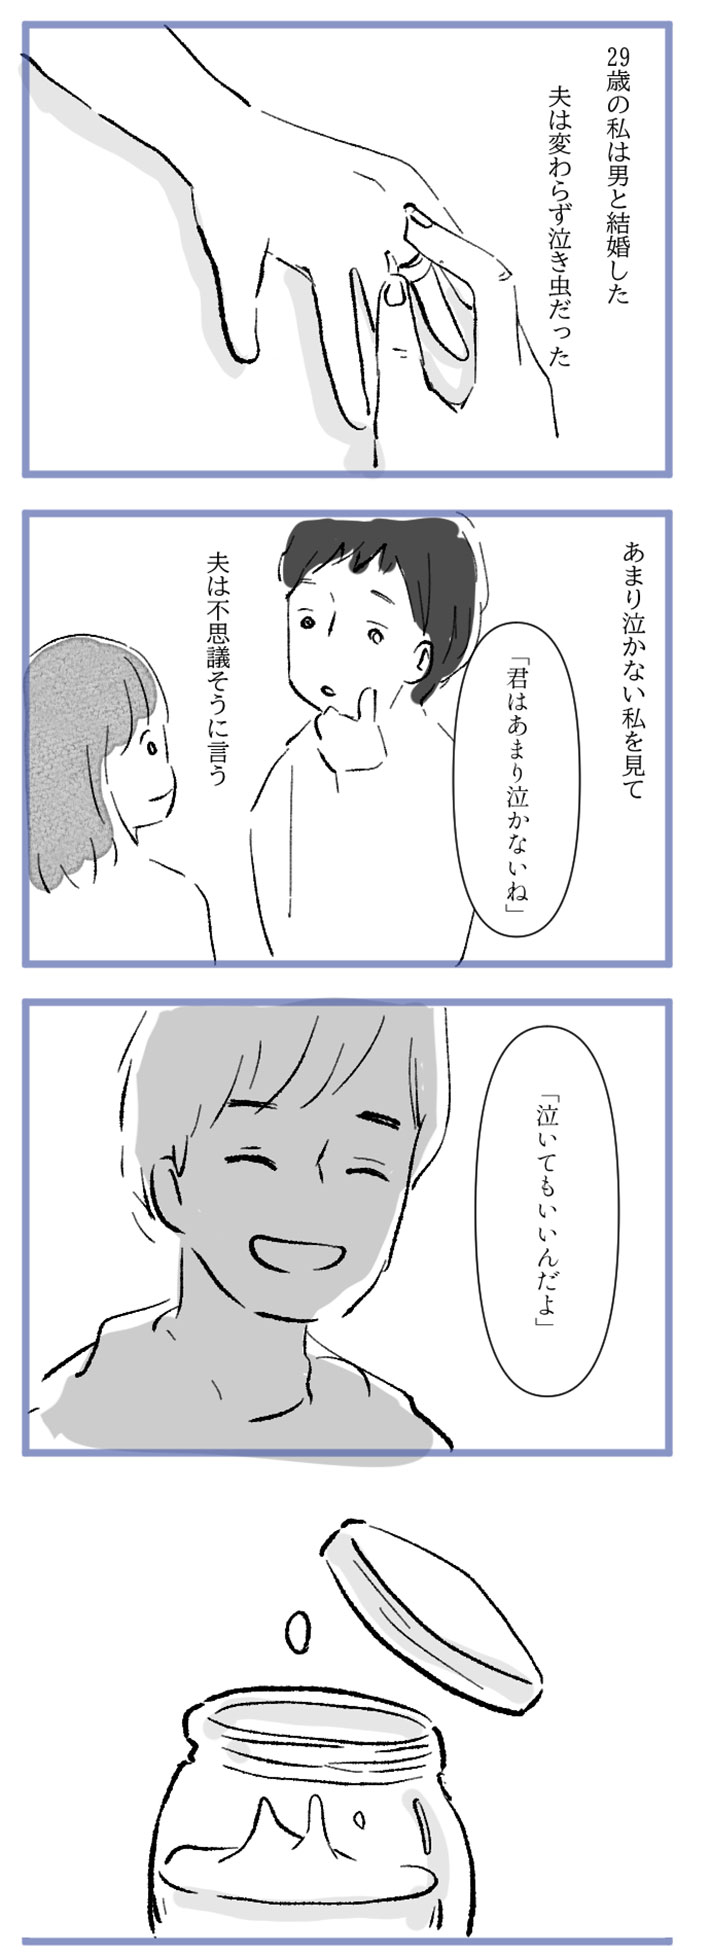 水谷アスさんの漫画作品8